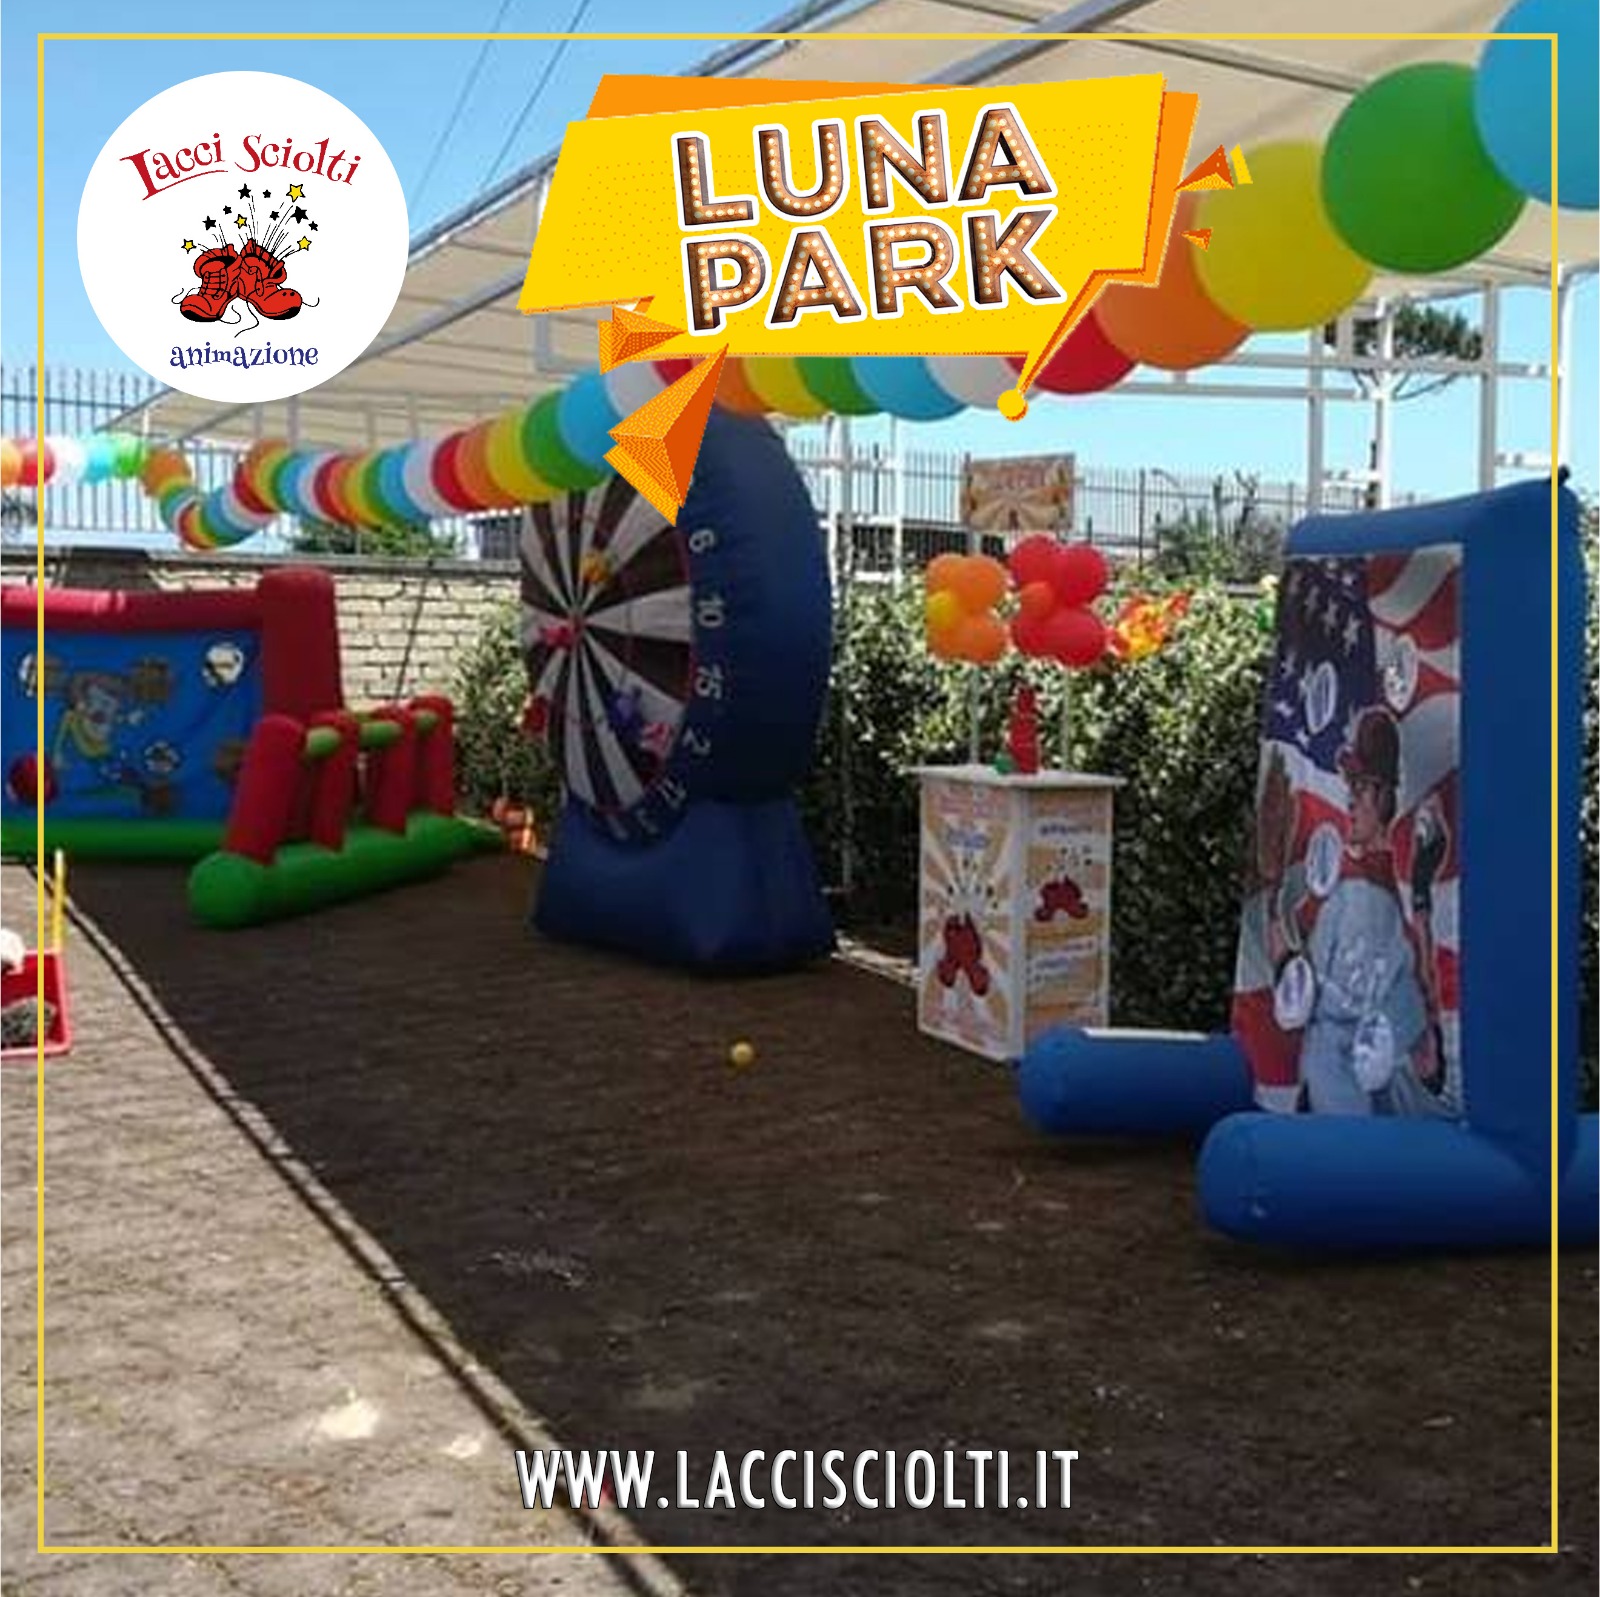 Festa Luna park comunione